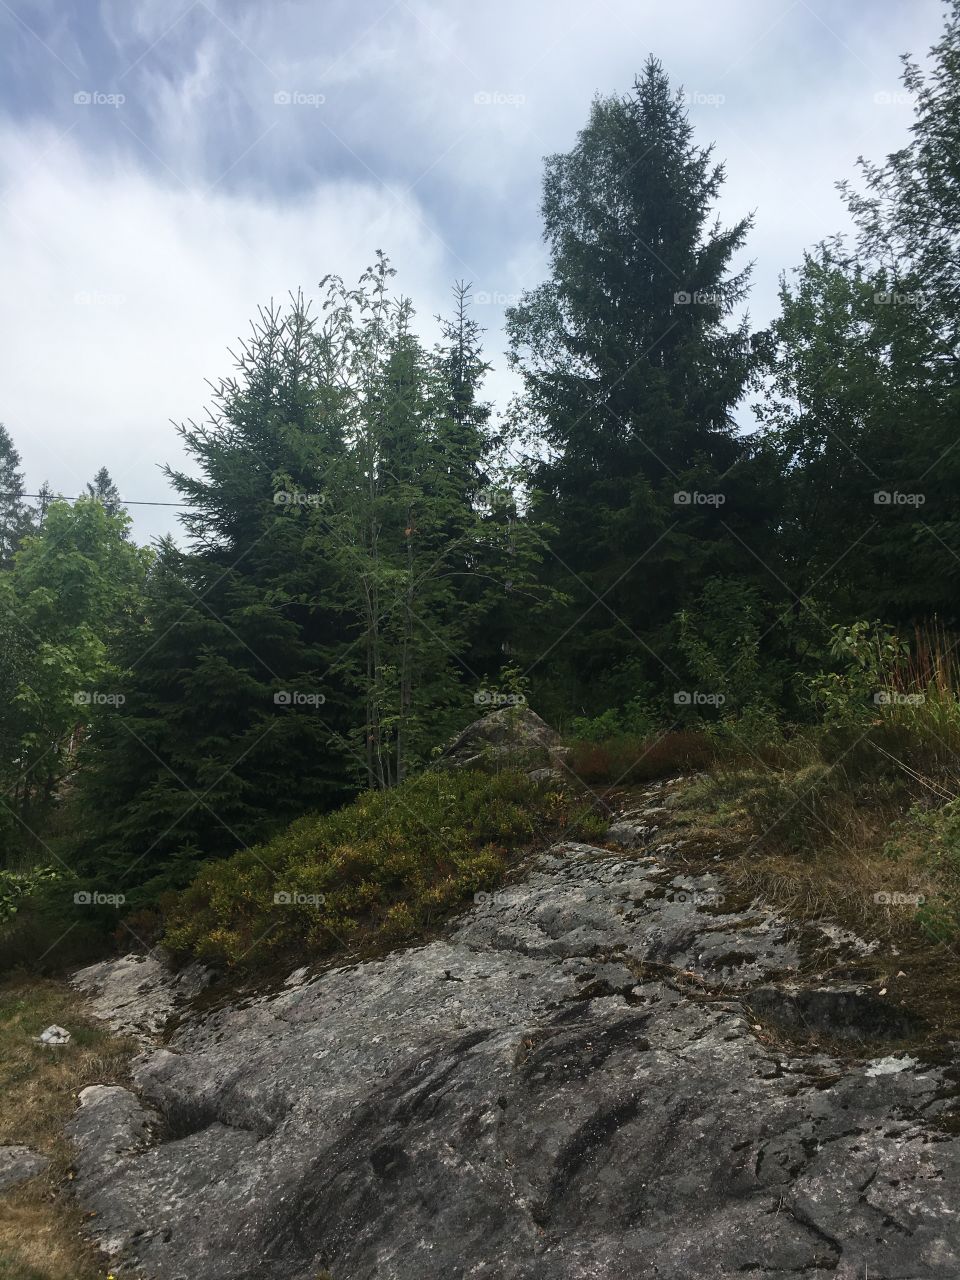 Pines on rocks